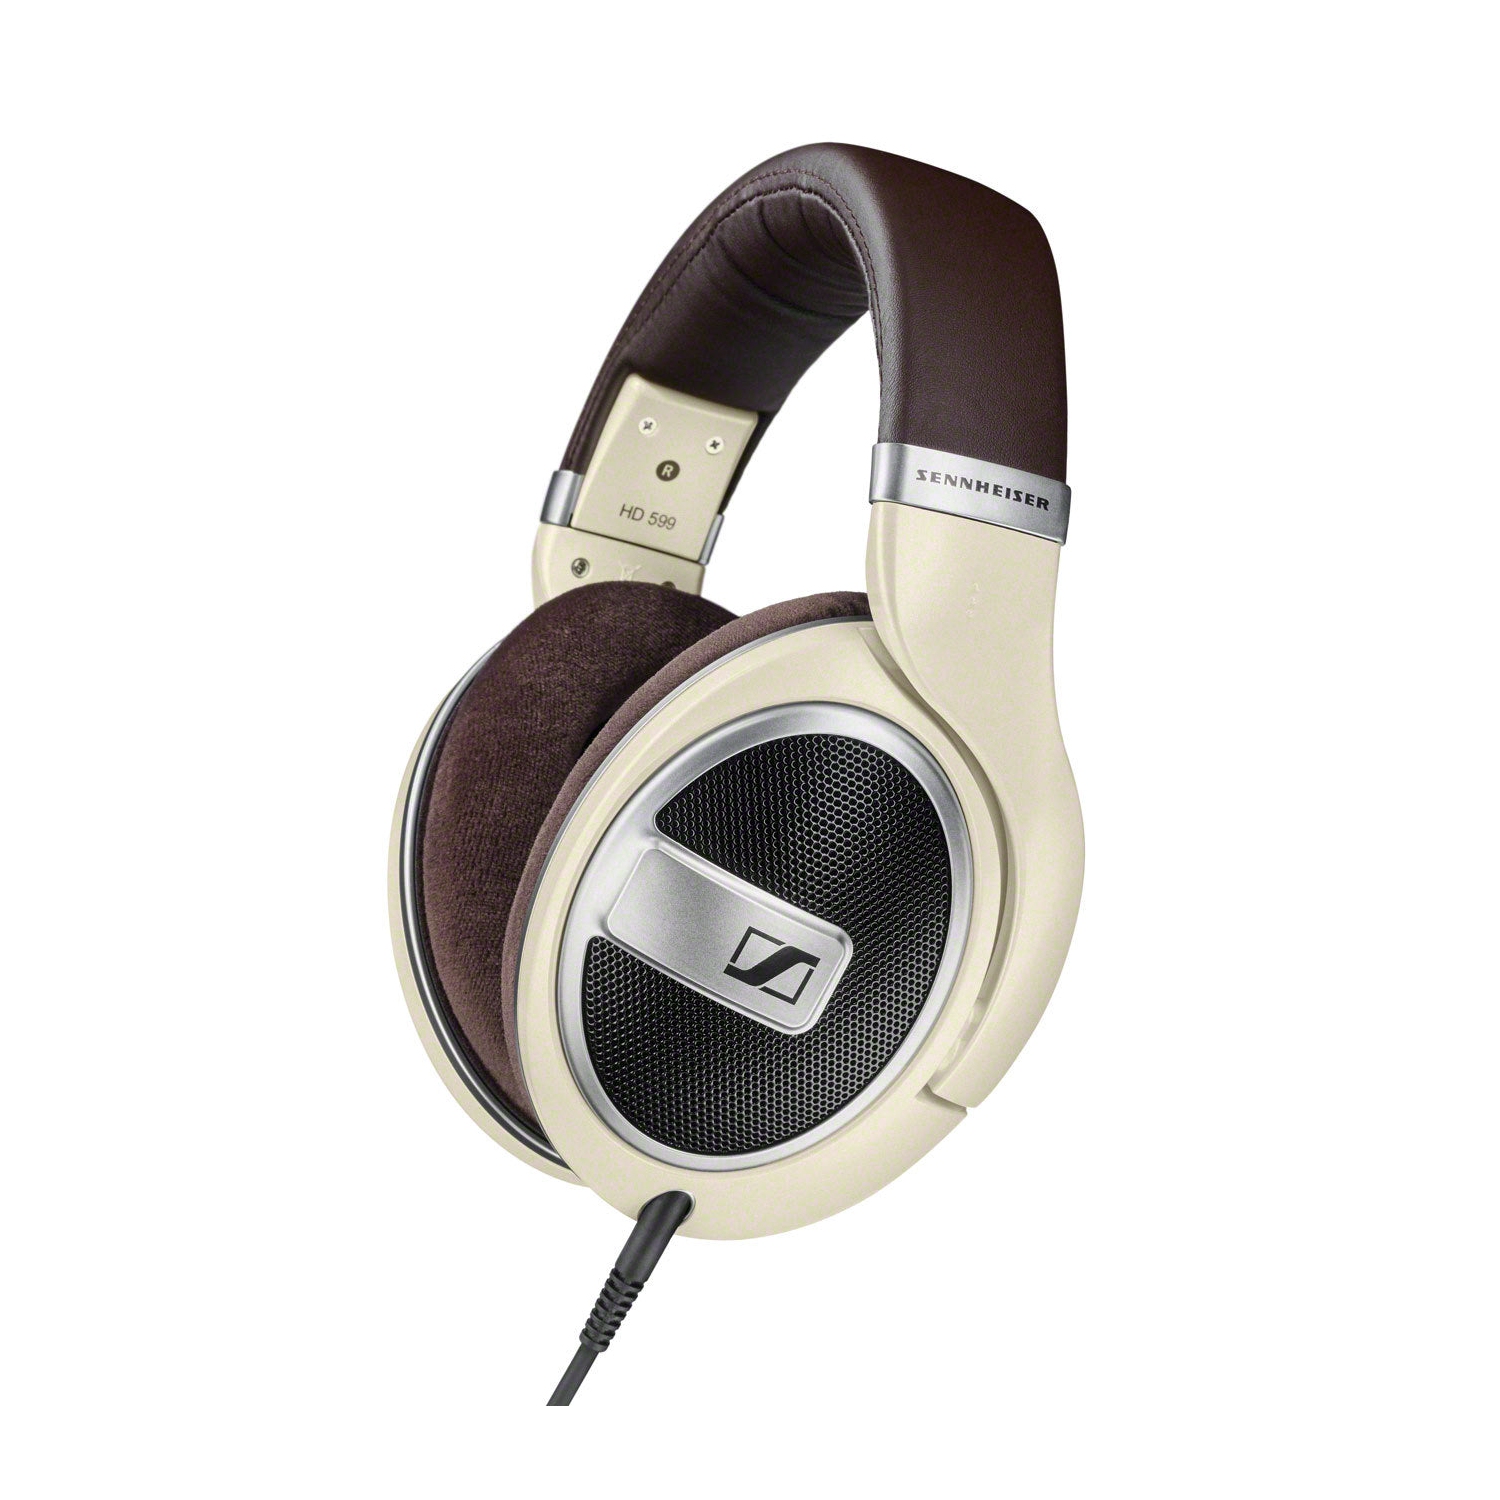 Refurbished (Excellent) - Sennheiser HD 599 Open Back Headphone, Ivory - Manufacturer Certified Refurbished